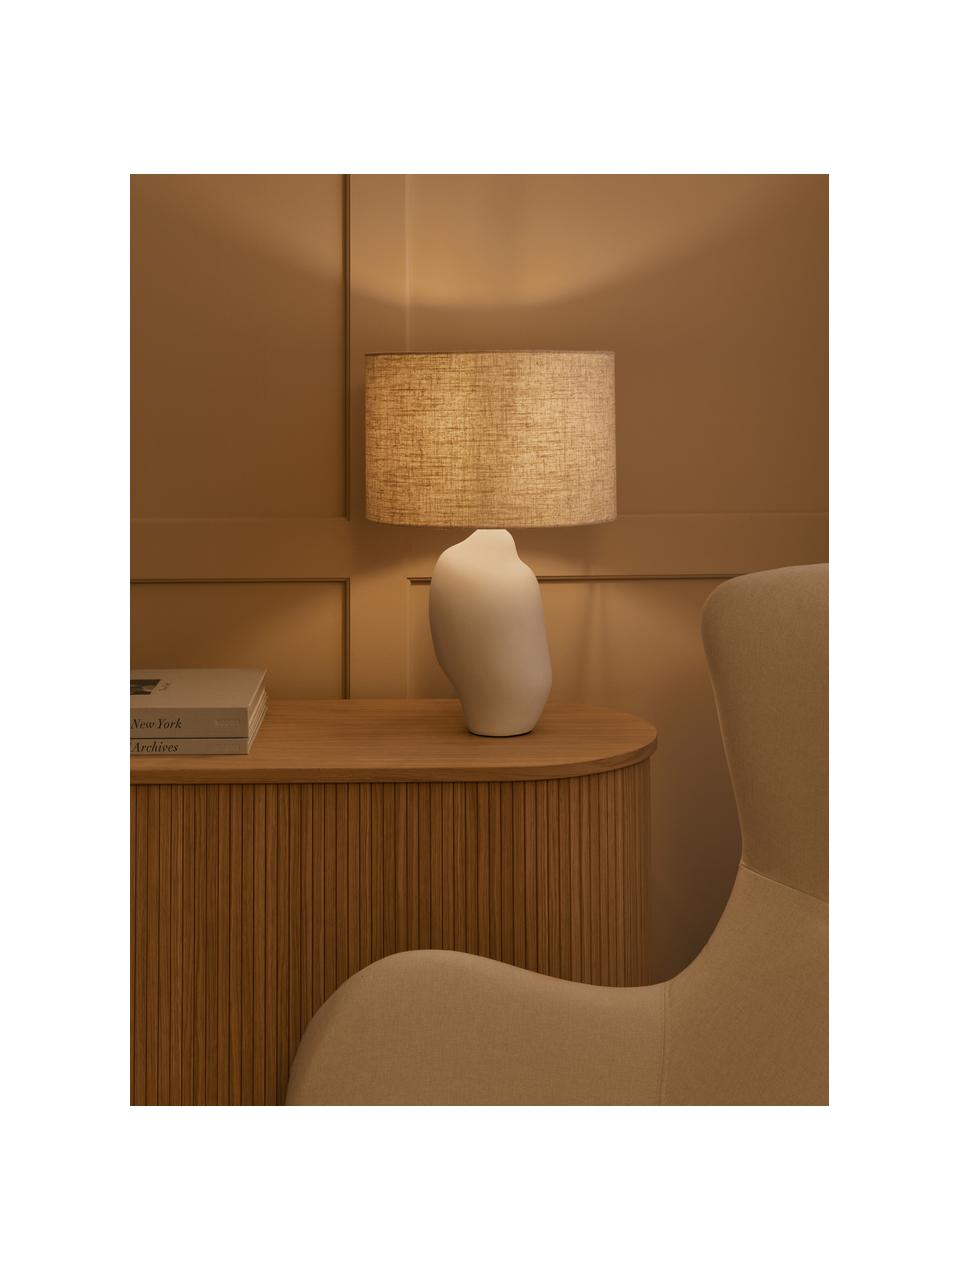 Lampada da tavolo in ceramica dalla forma organica Colett, Paralume: misto lino, Base della lampada: ceramica, Beige, bianco, Ø 35 x Alt. 53 cm